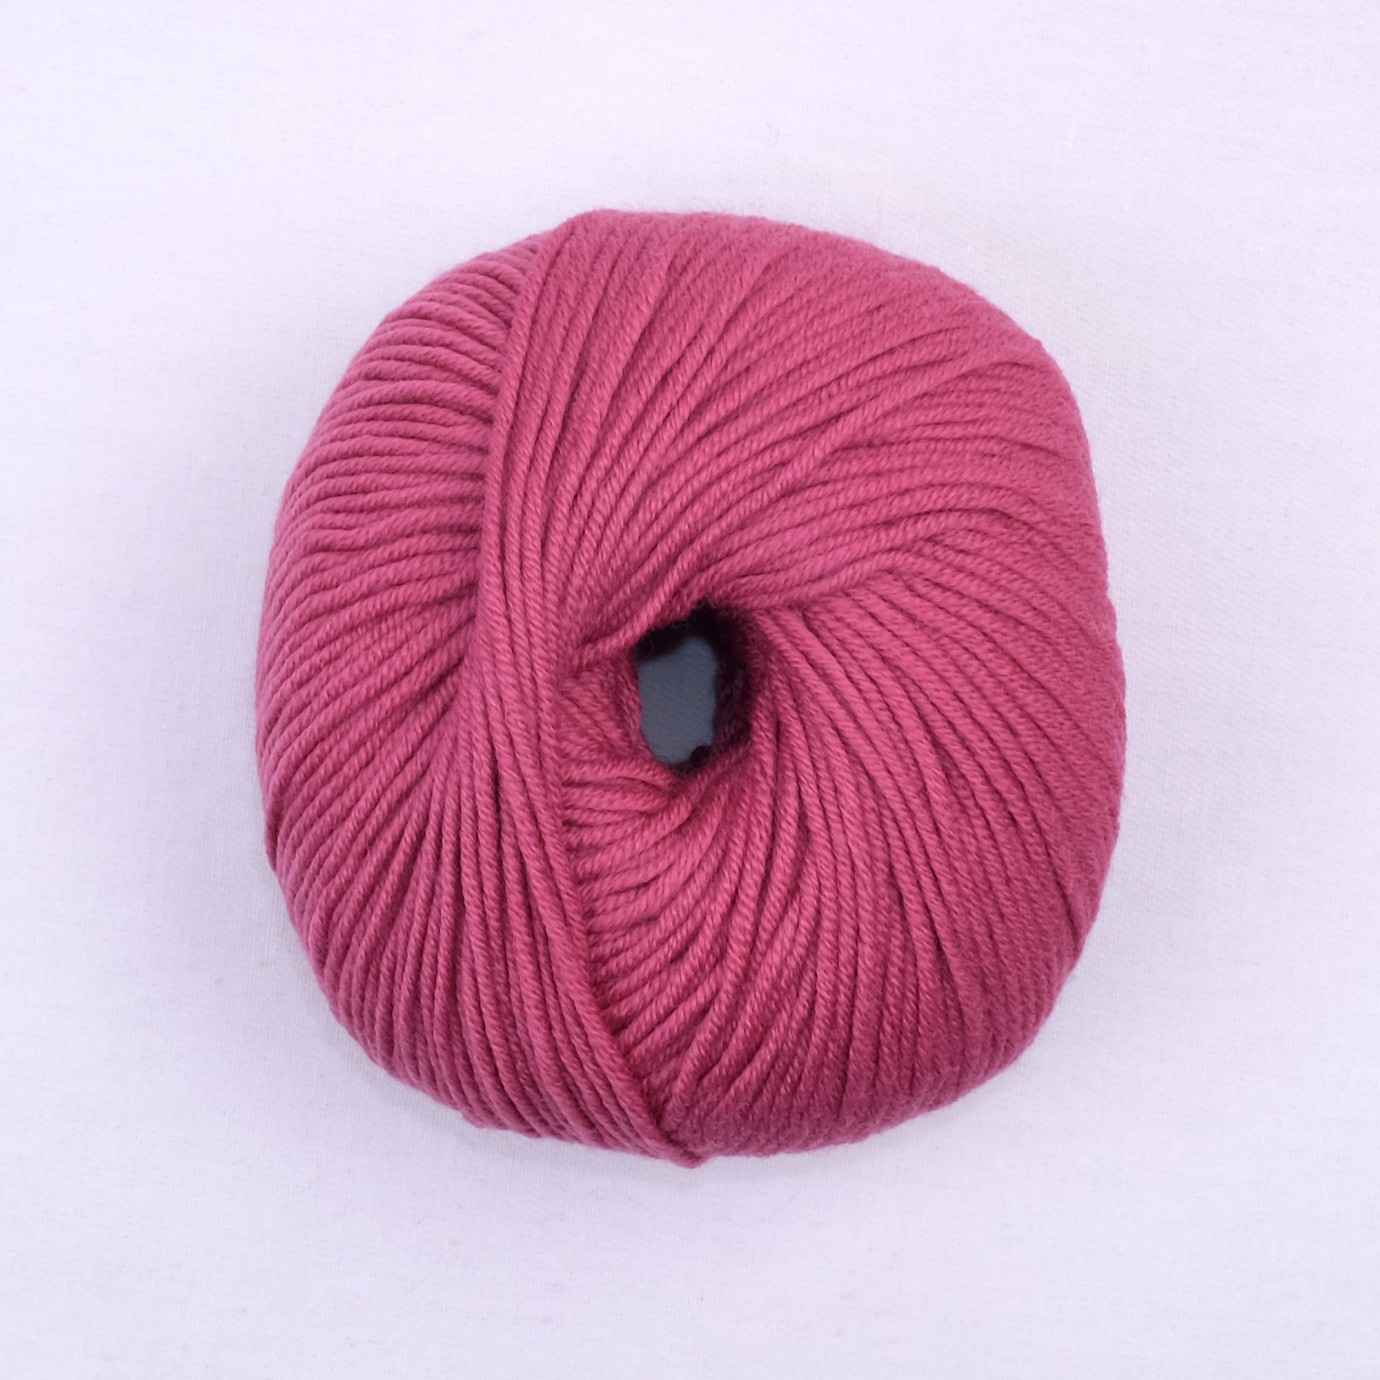 100% laine rose mérinos à tricoter. 50G/100M - Aiguilles: 4 à 4.5 mm